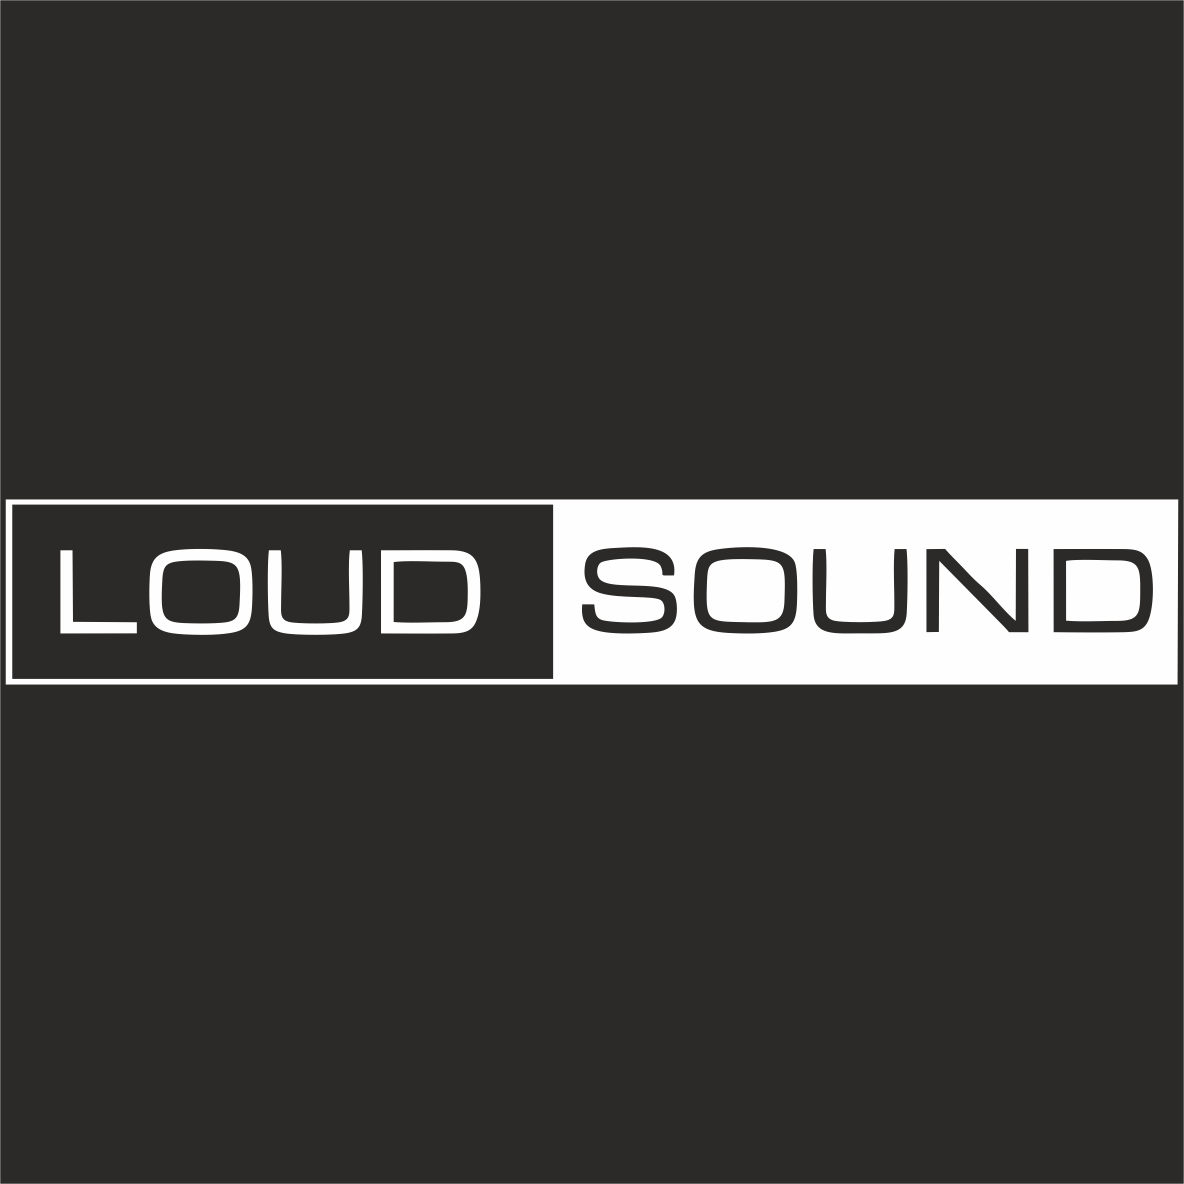 Loud moning sounds